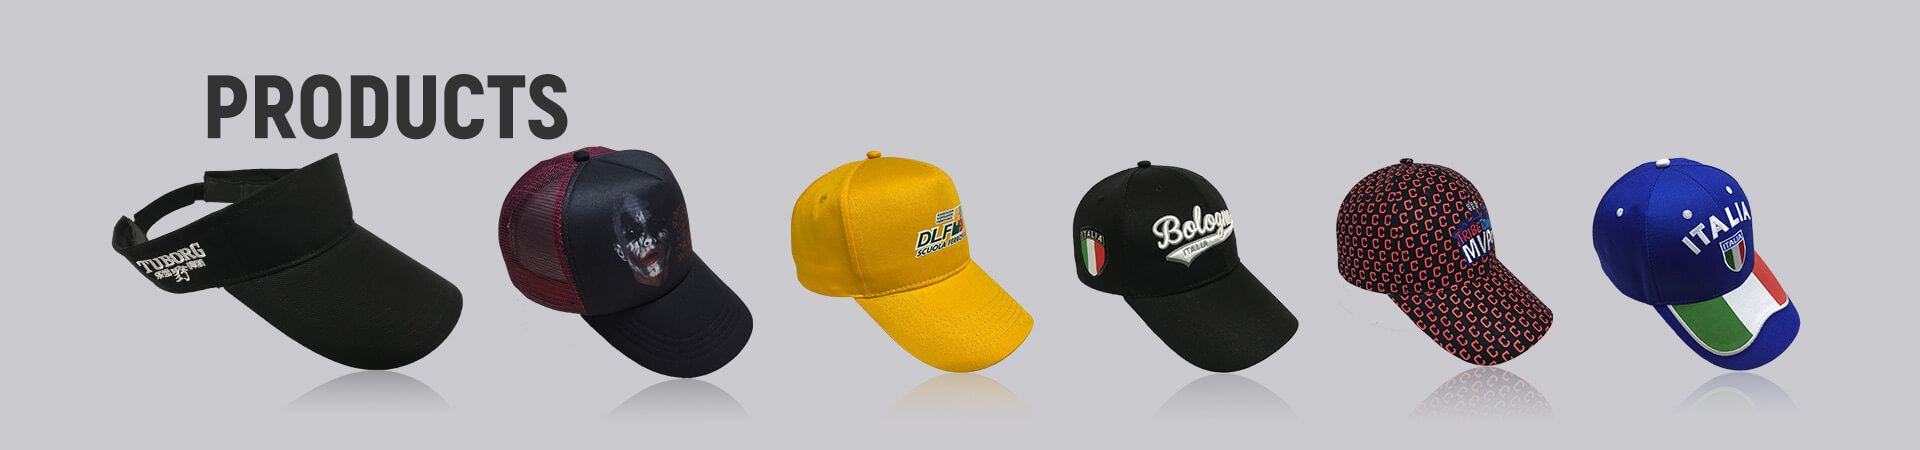 Chapeau brodé Archives - Casquette de baseball, casquette de sport, casquette de golf, chapeau de seau, chapeau de pêcheur, chapeau de camionneur